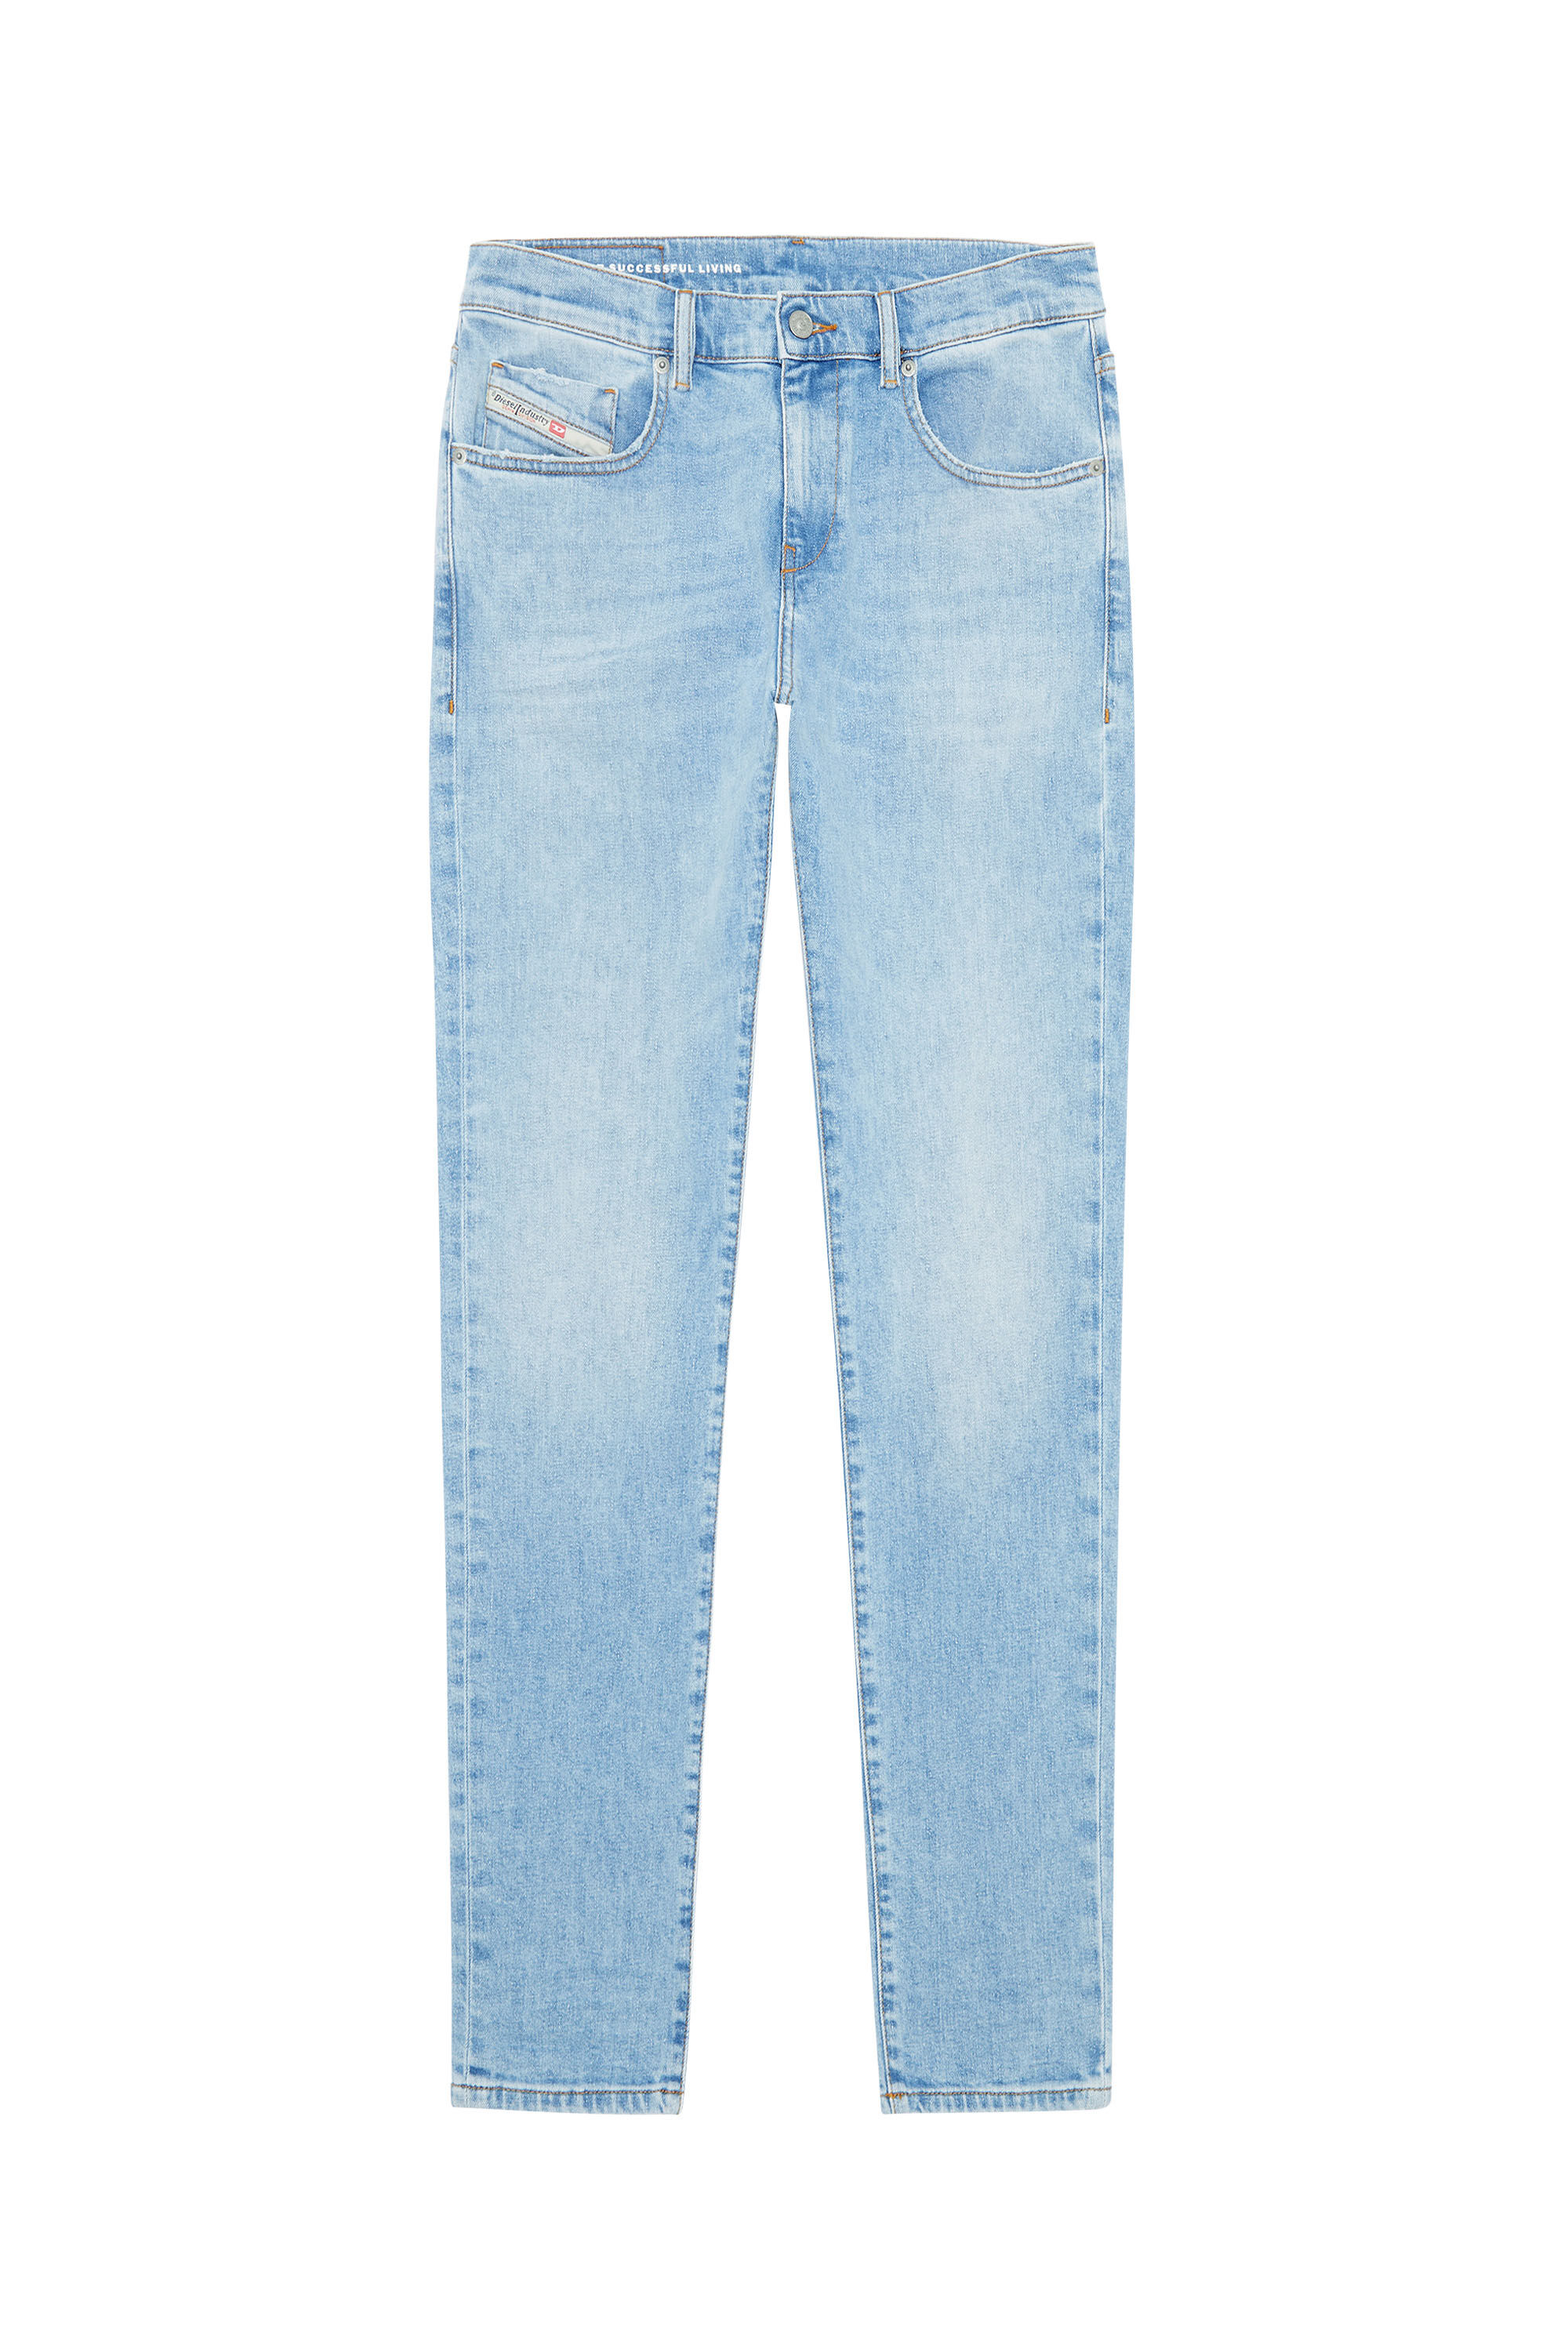 Diesel - Slim Jeans 2019 D-Strukt 09F41, Light Blue - Image 2